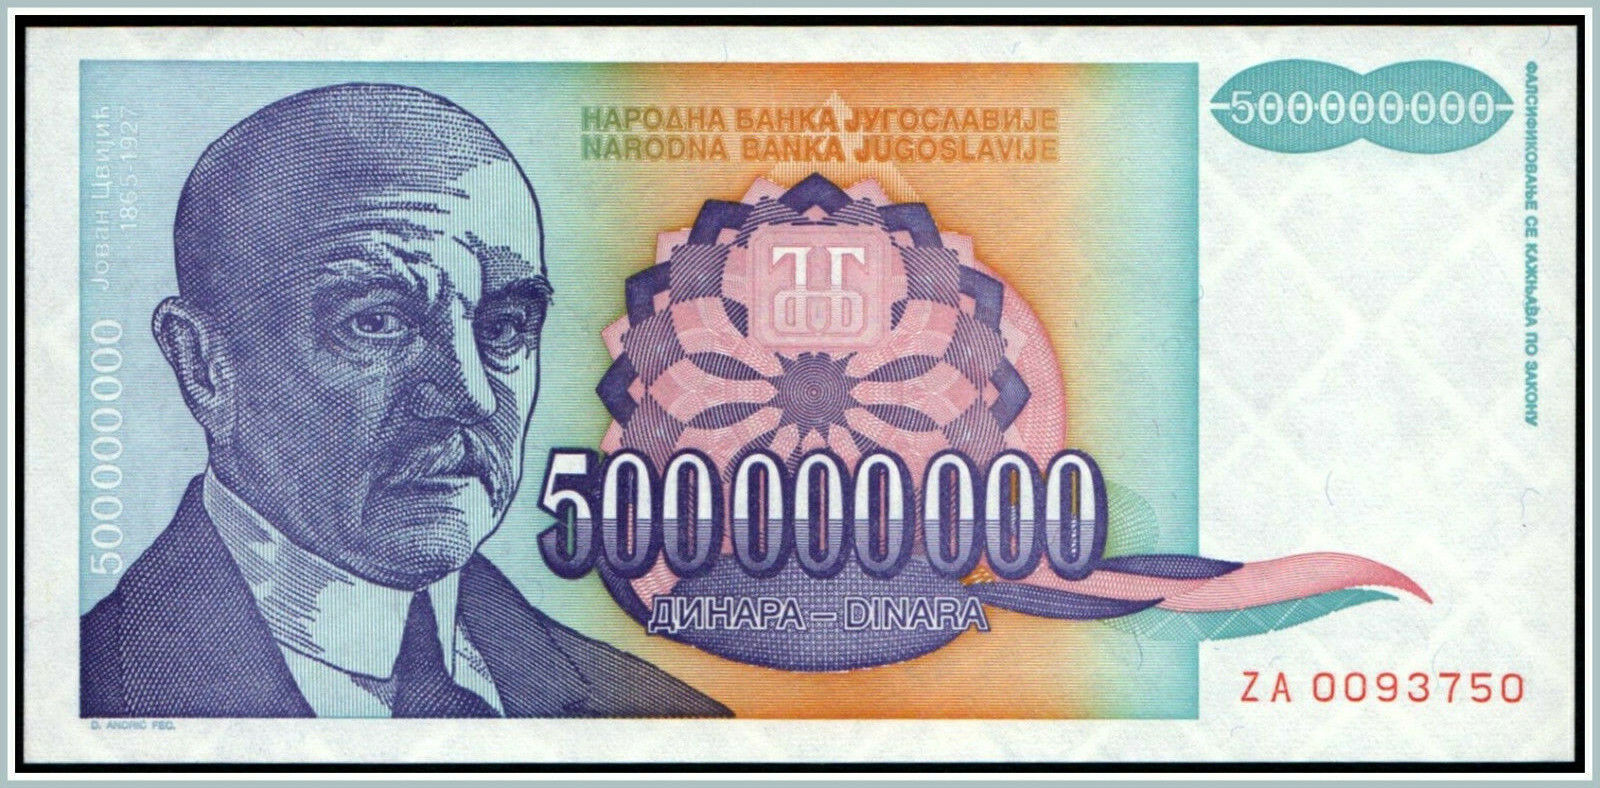 Yugoslavia 500,000,000 Dinara 1993 Pick 134 !!! REPLACEMENT !!!